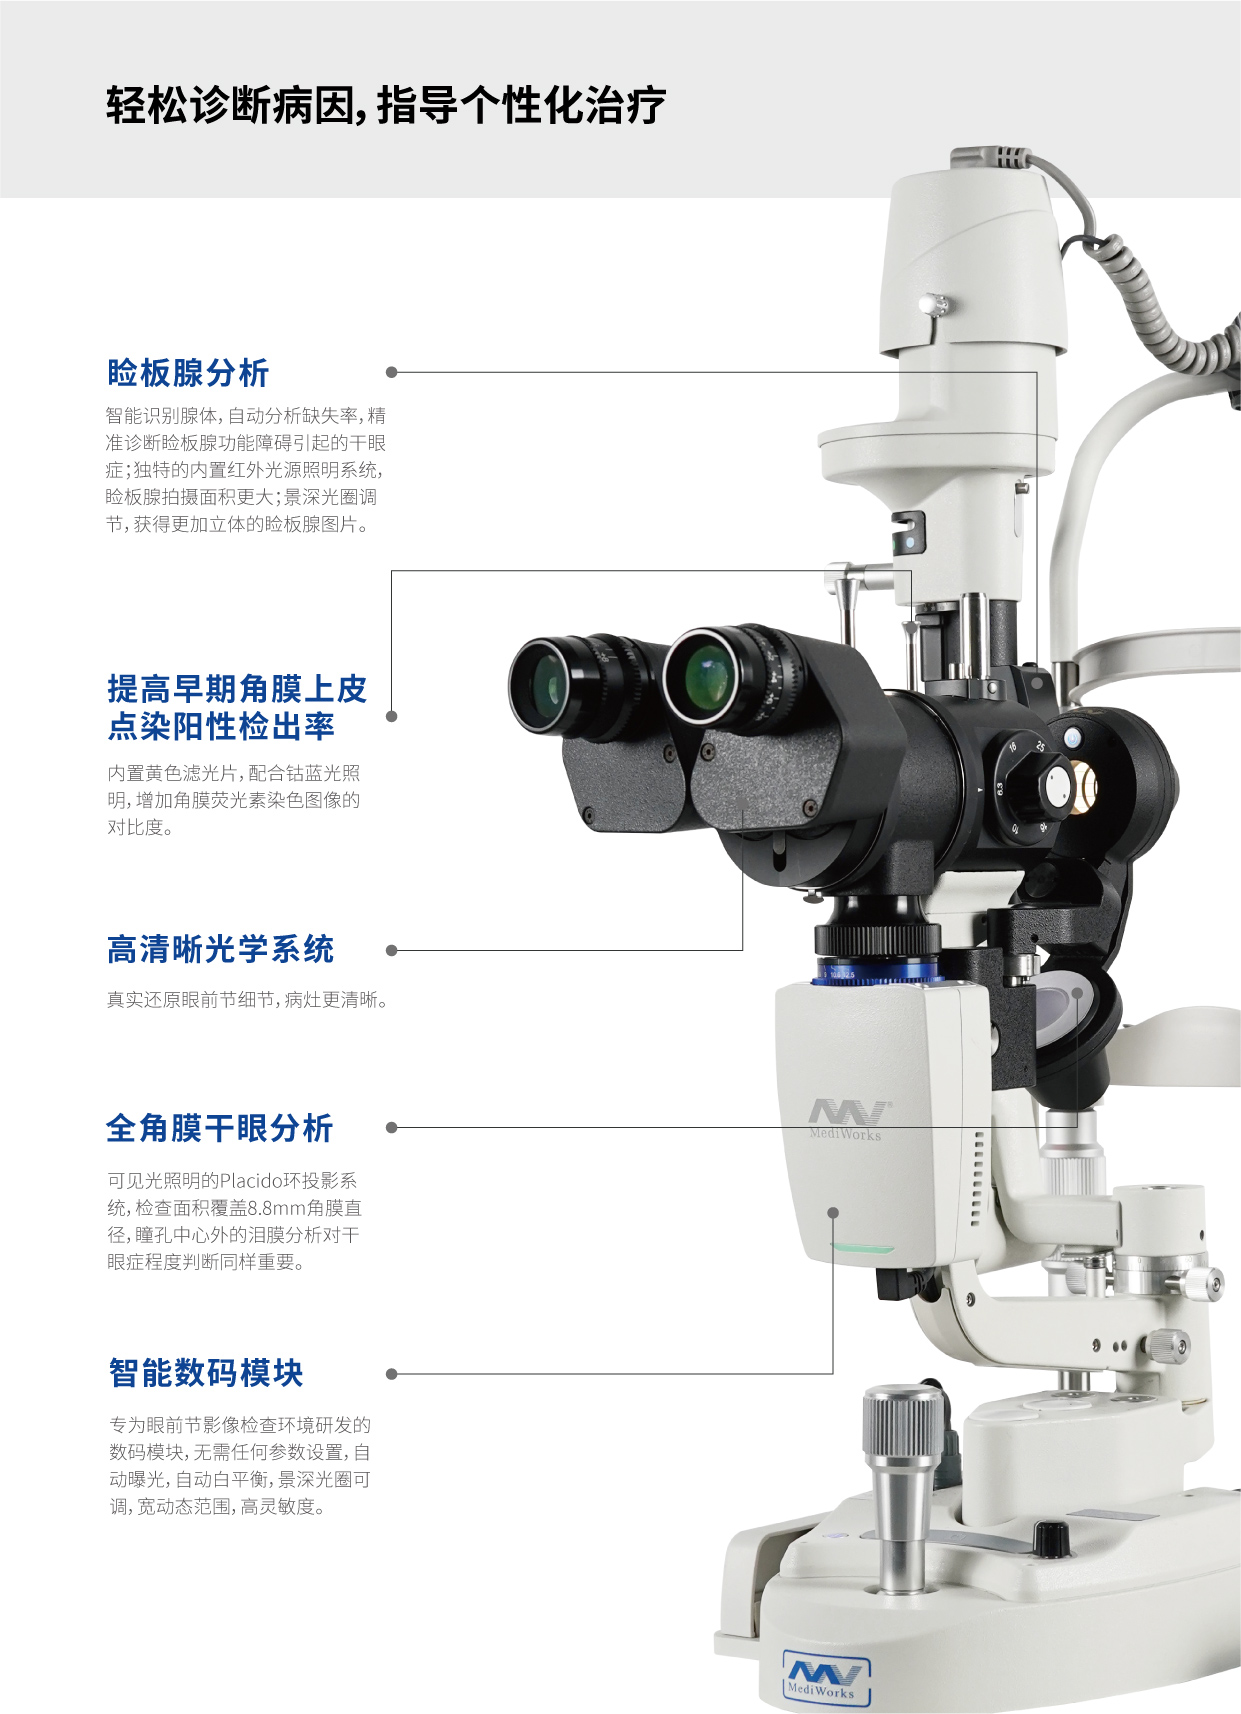 S390H+D130 裂隙灯显微镜眼表观察模块 20230829 - 副本-03.jpg